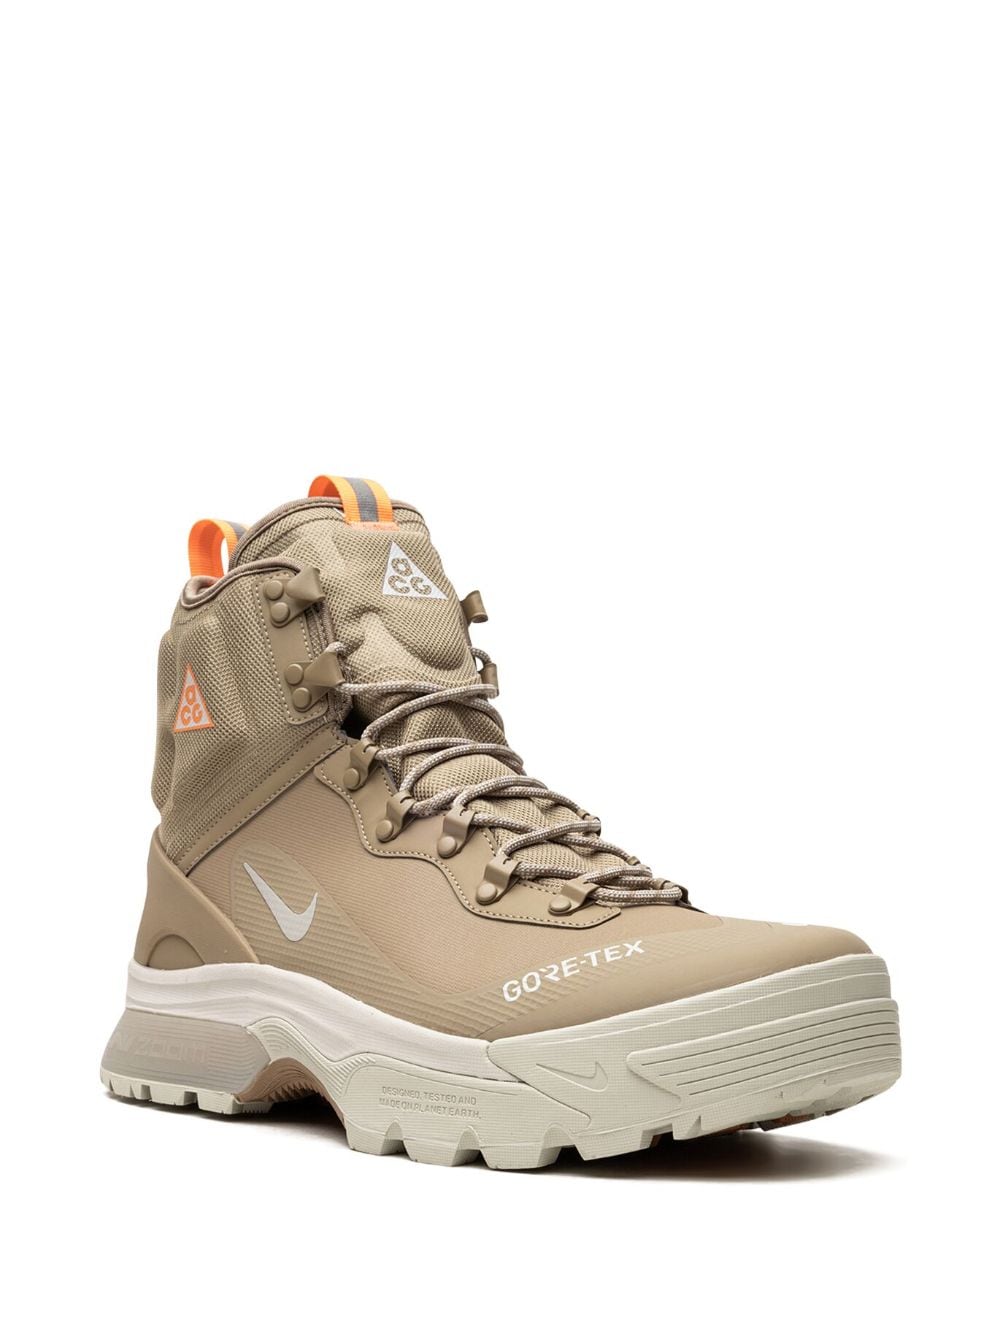 Nike Air Zoom Gaiadome "Gore-Tex" Boots - Farfetch